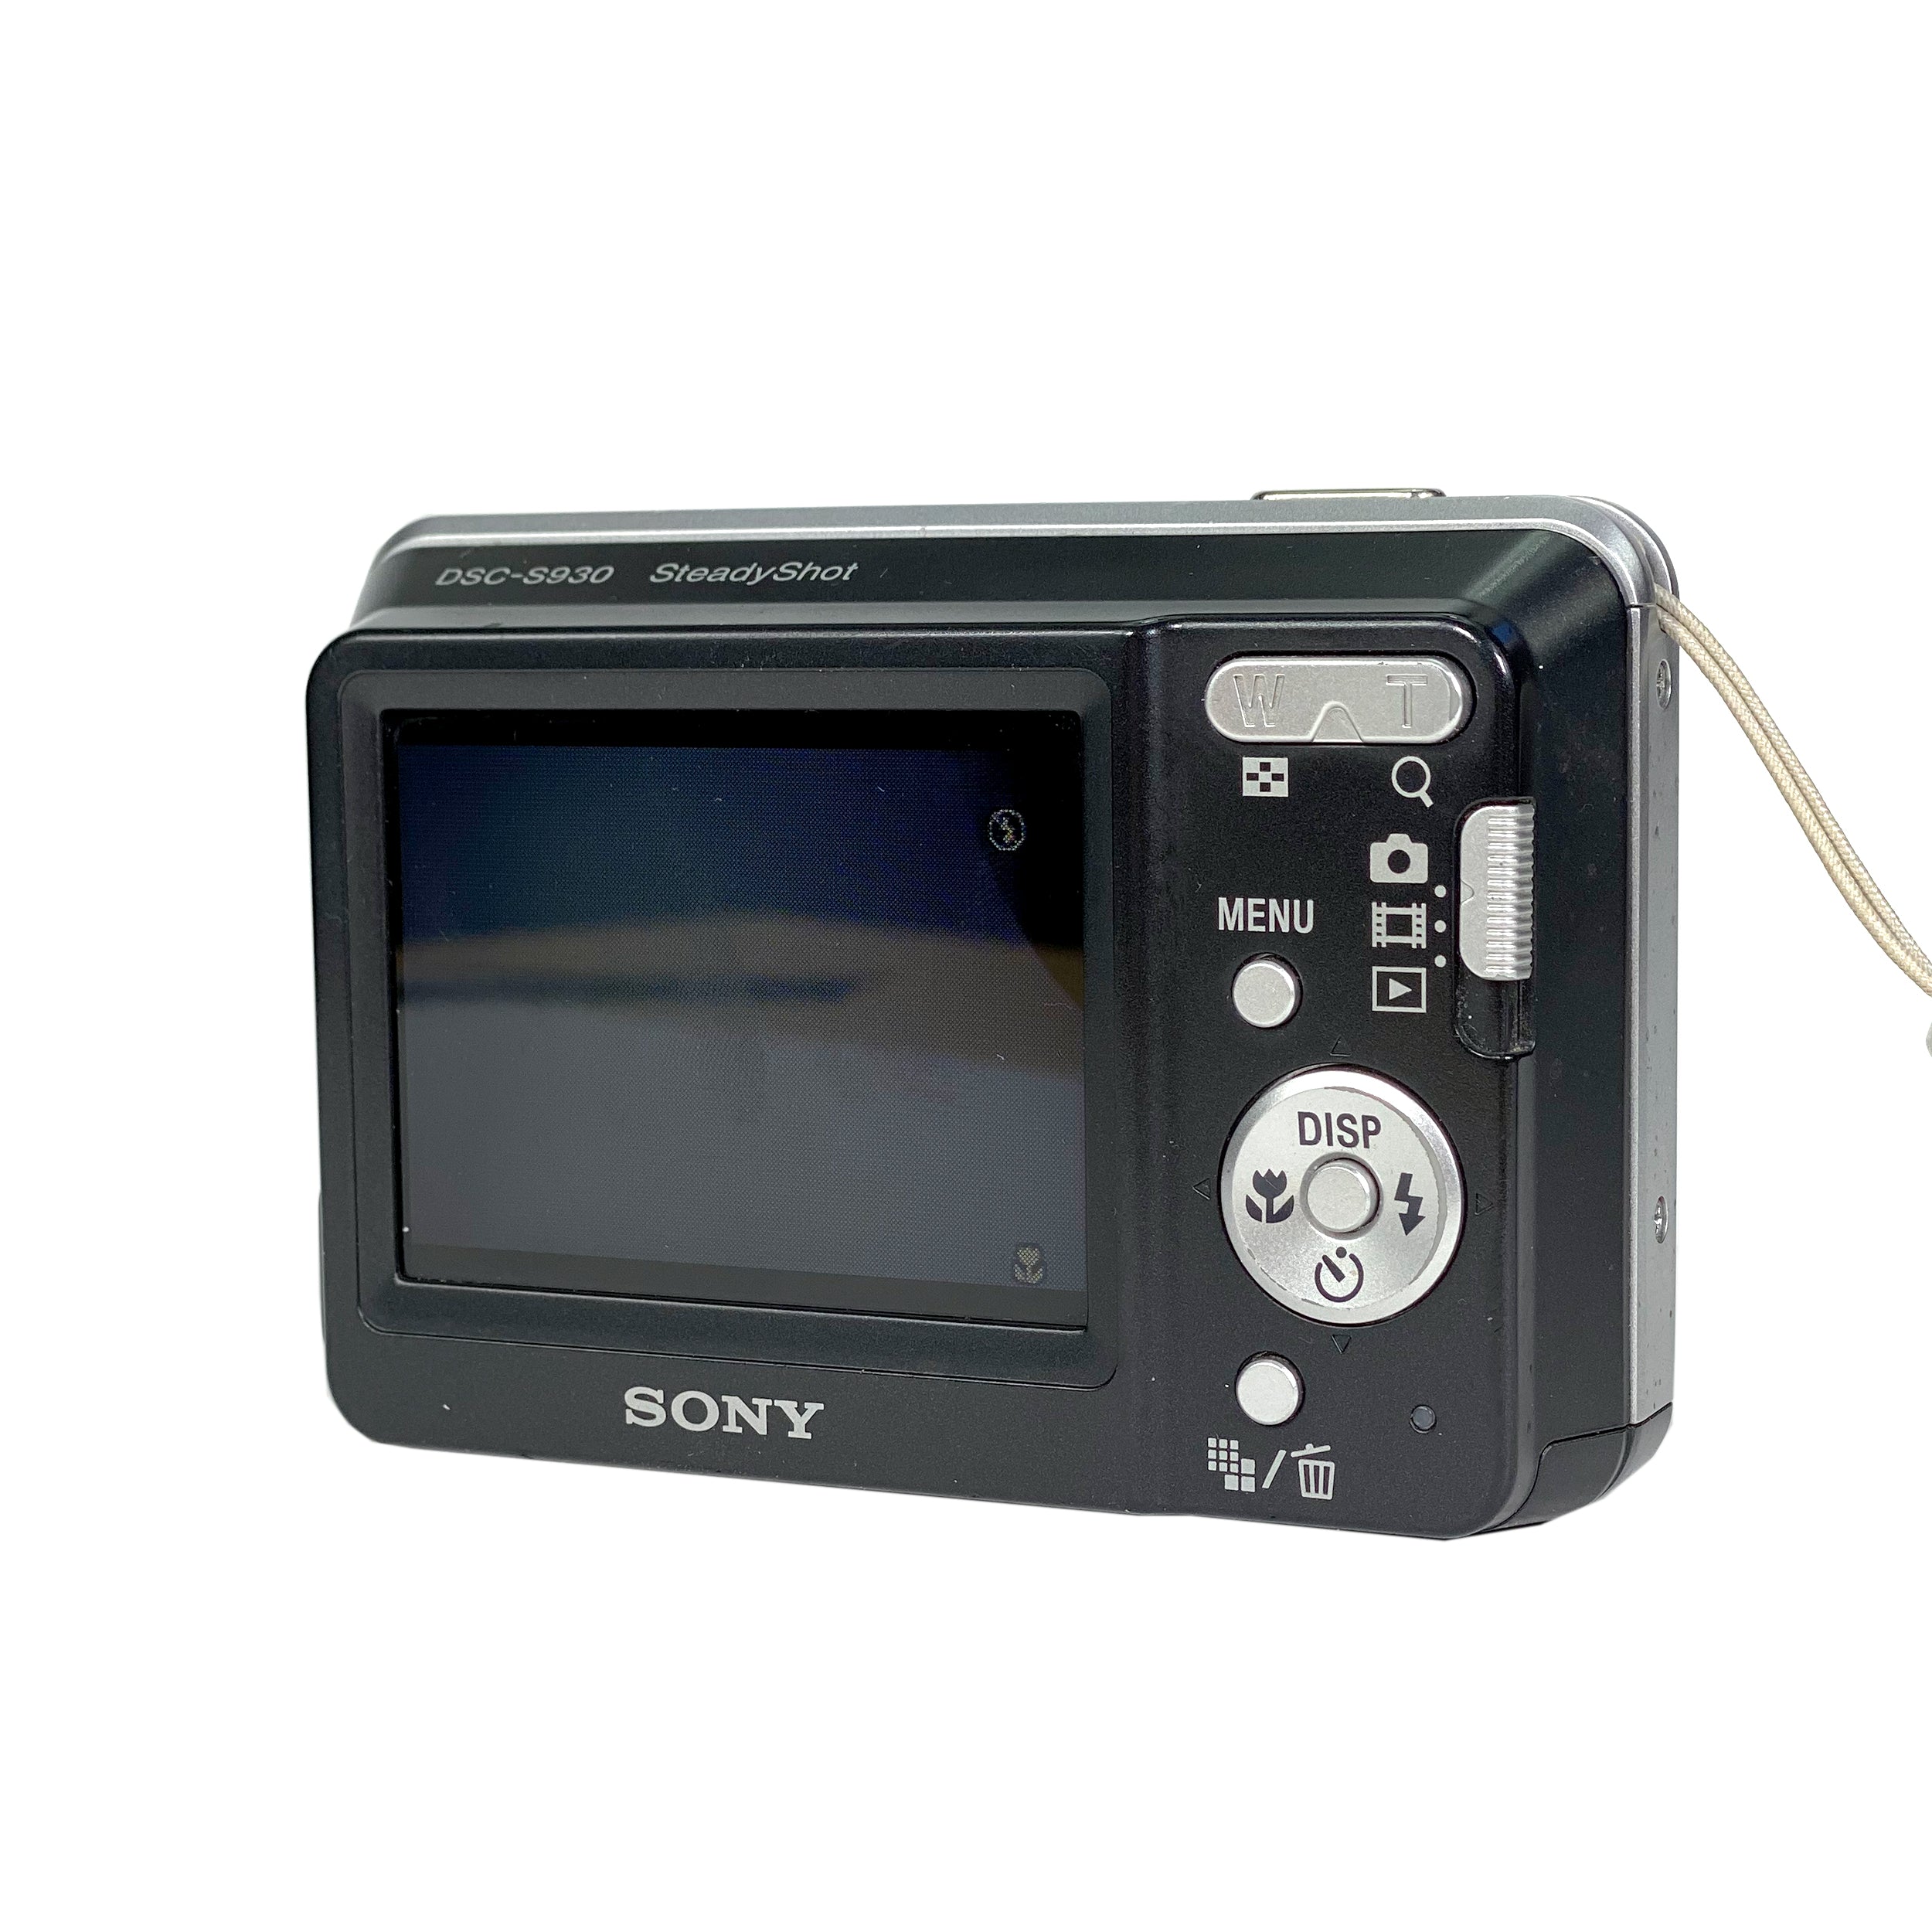 Sony Cyber-shot DSC-S930 10.1MP Digital Camera - Silver for sale online